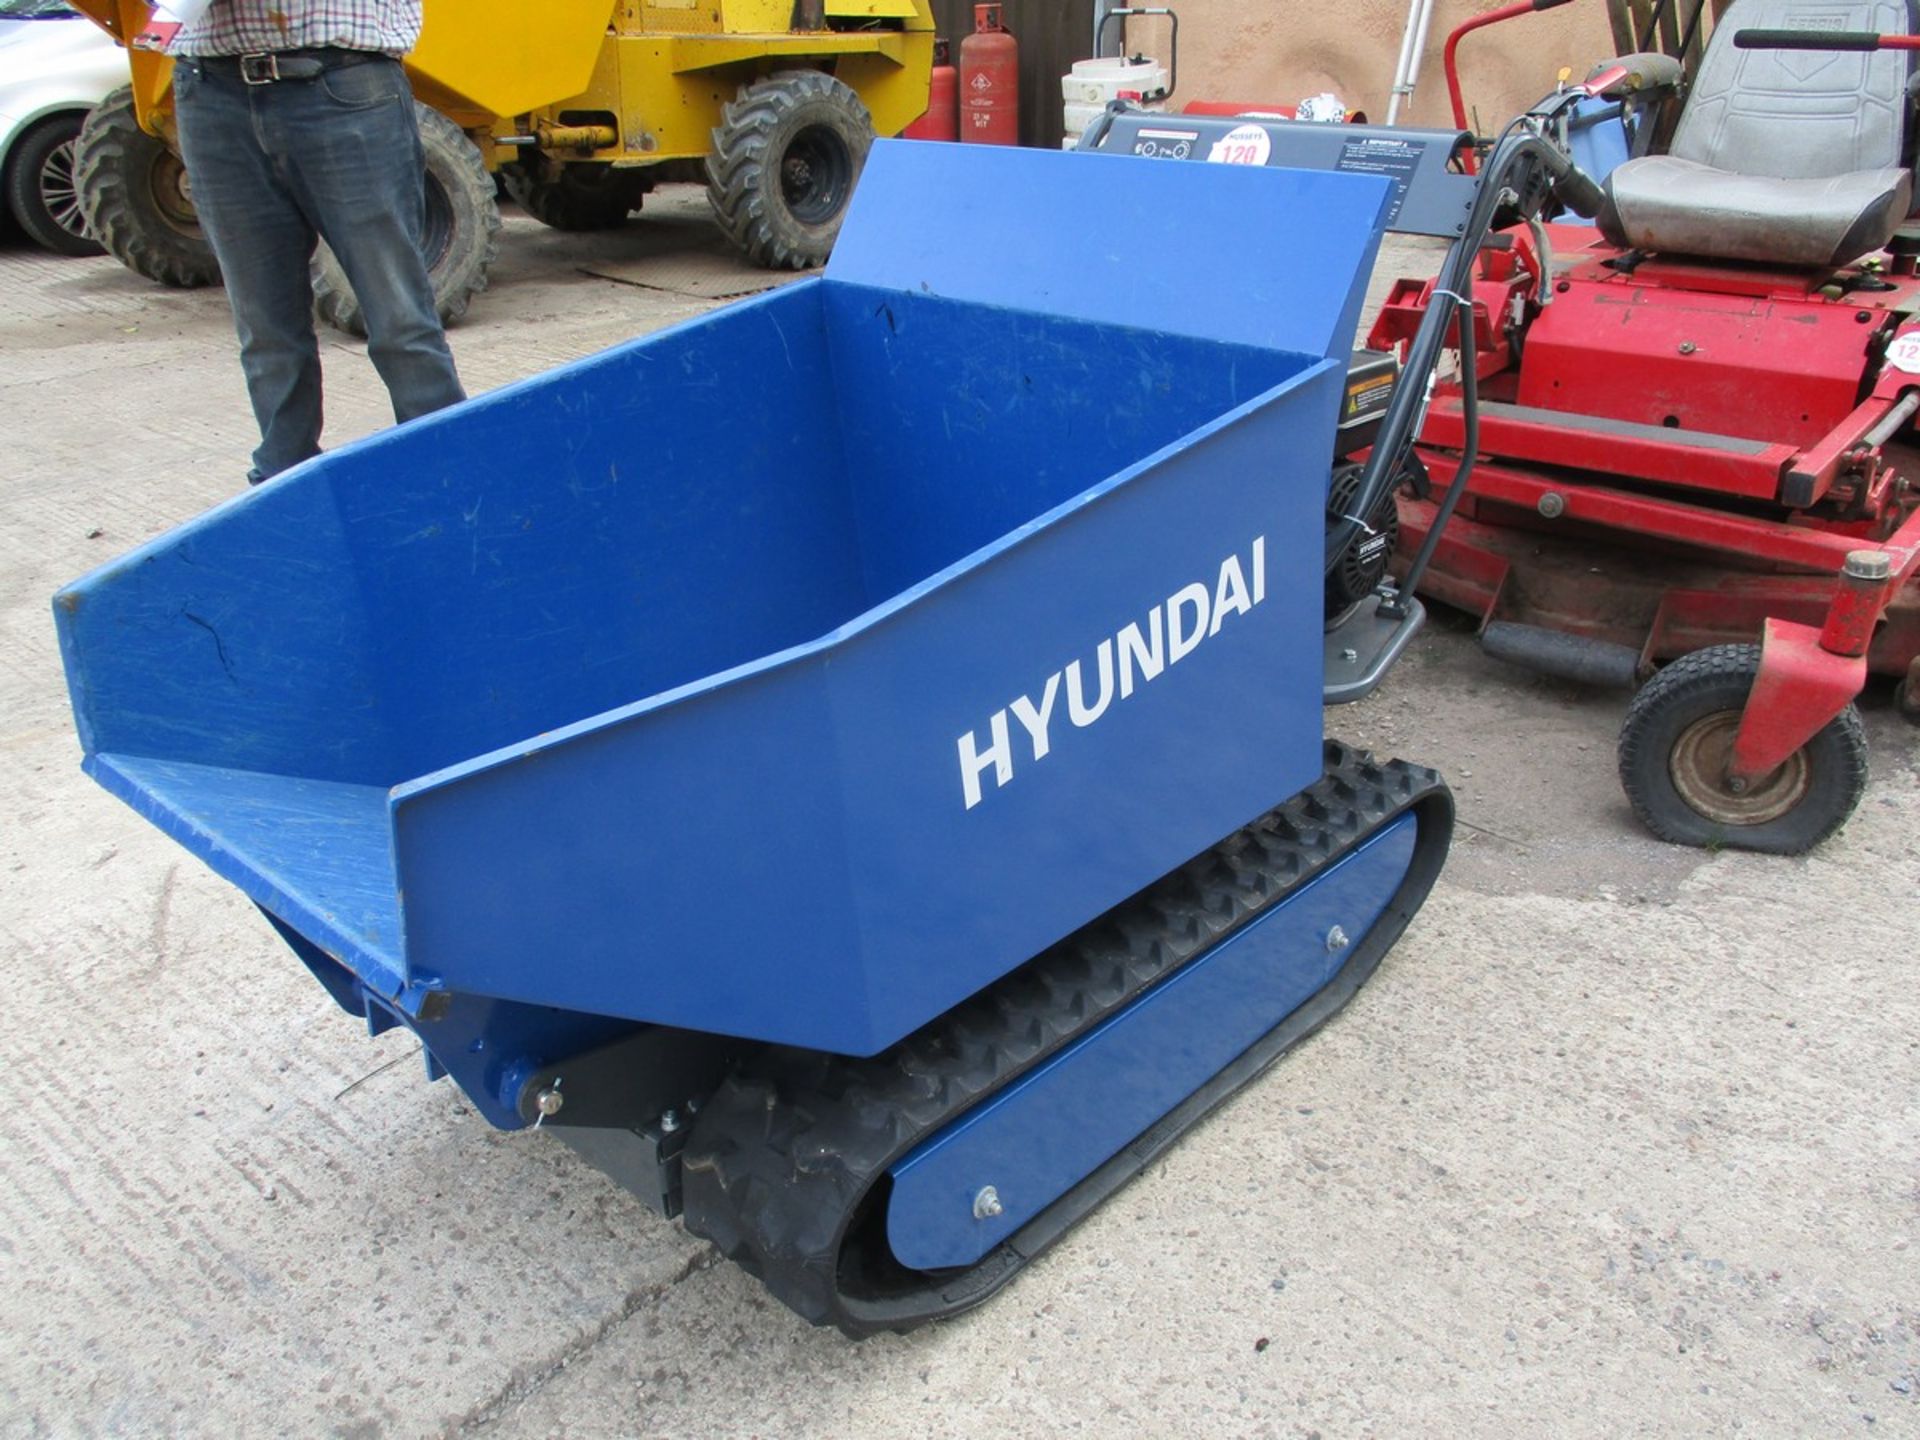 HYUNDAI 500KG TRACK BARROW HYDRAULIC TIP - Image 3 of 6